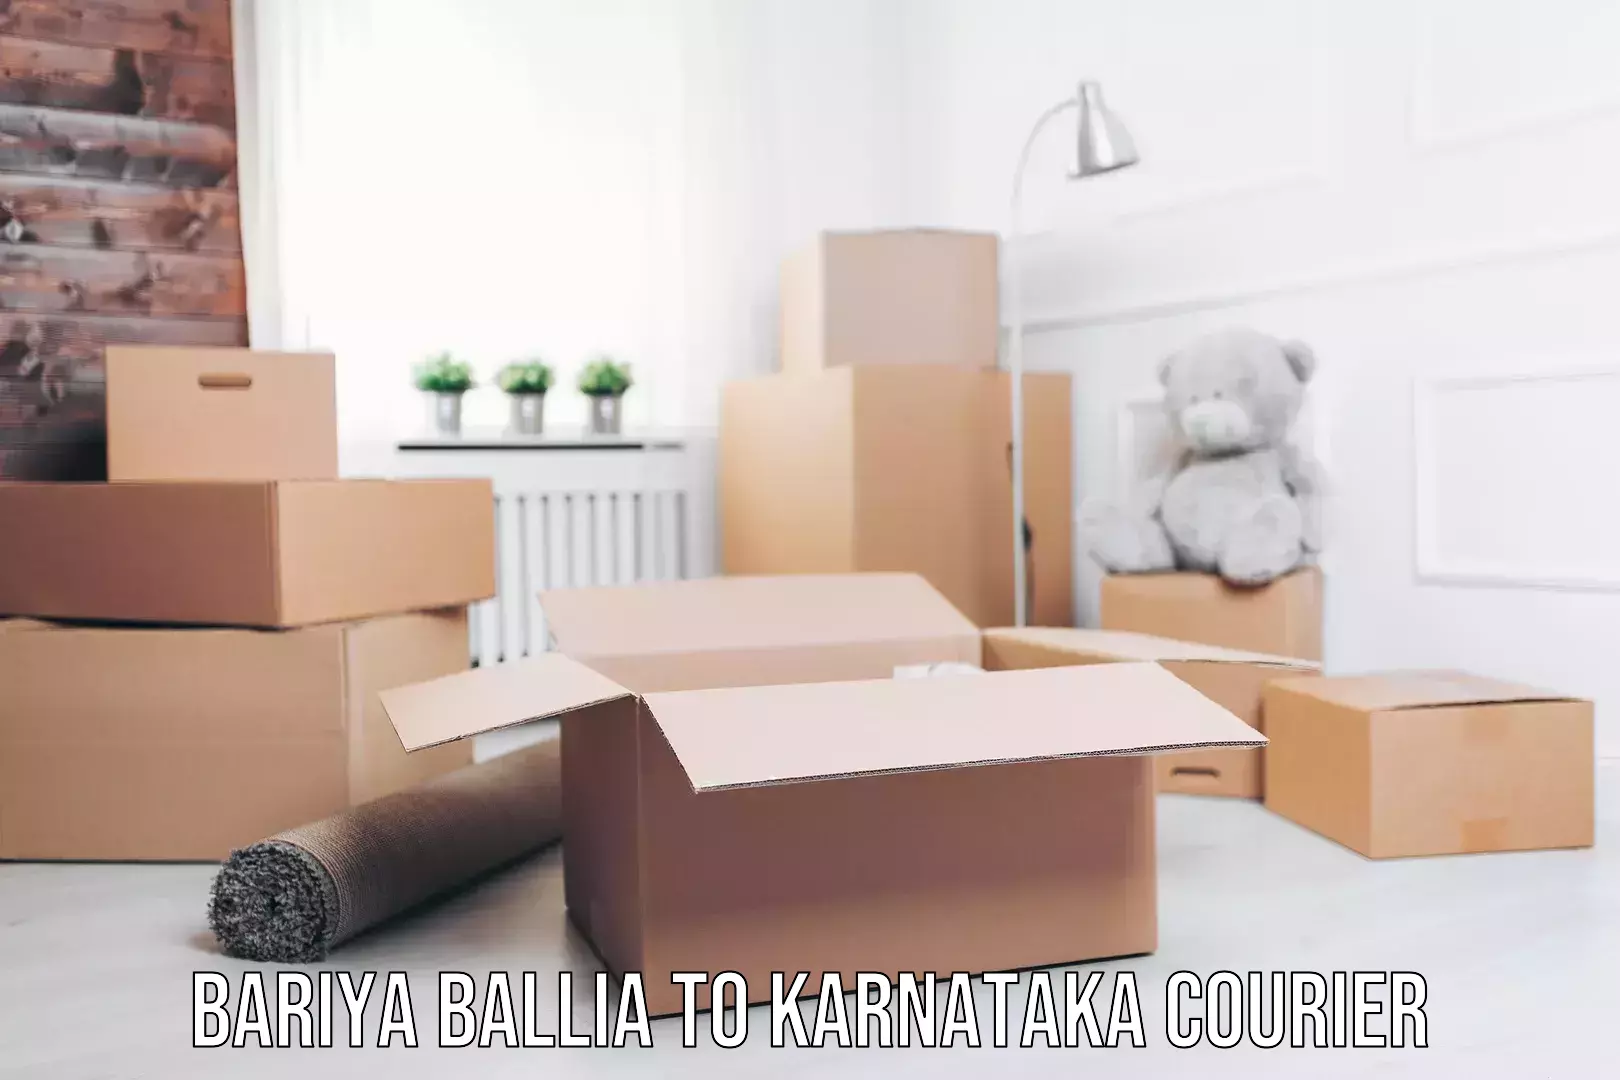 Global delivery options Bariya Ballia to Karnataka